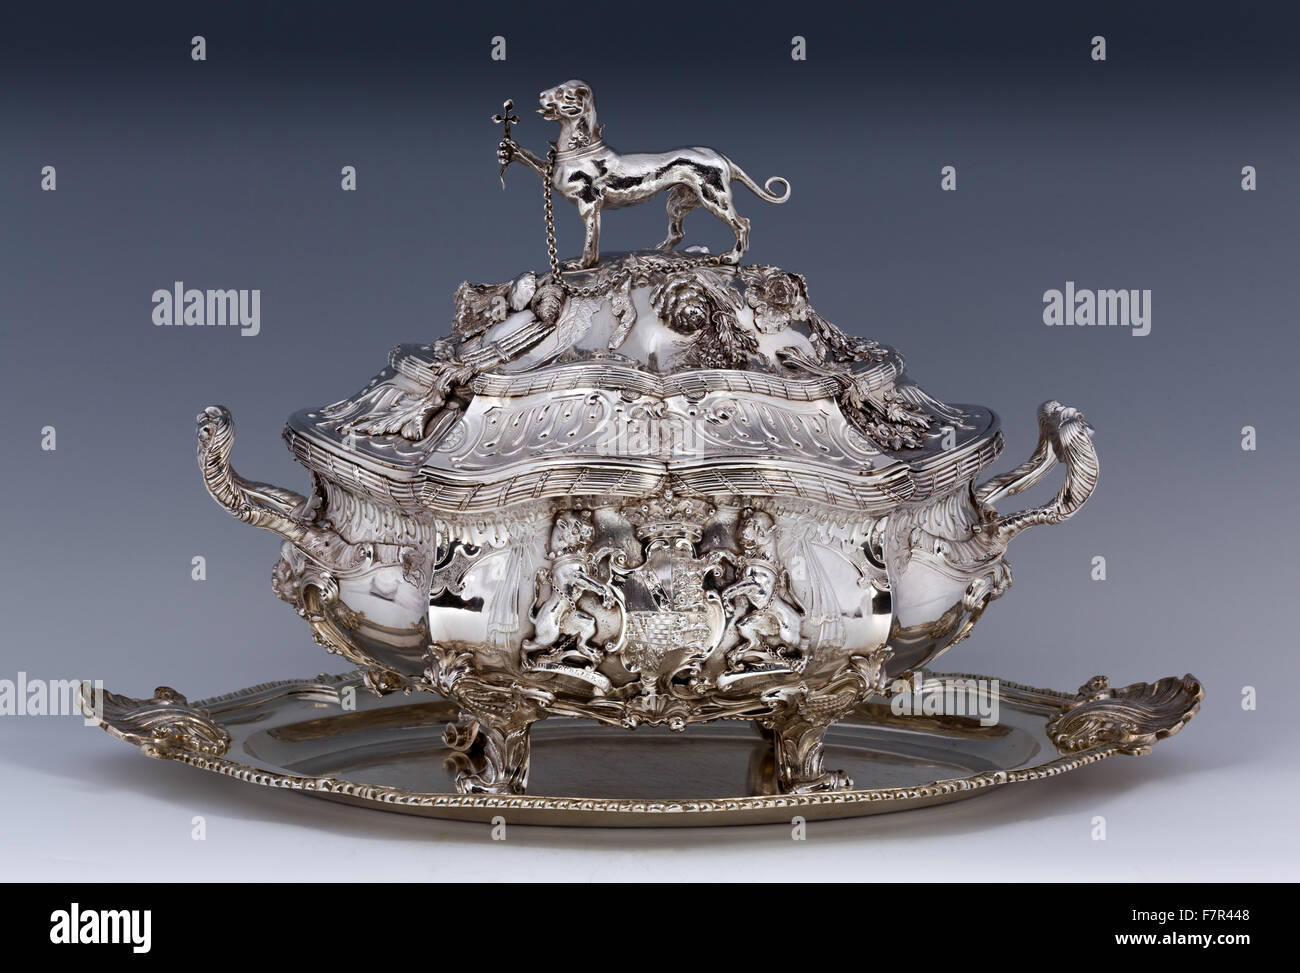 Ovale Terrine, 1752, Frederick Kandler, Silber auf Oval stehen, c.1755, Turin, Silber bei Ickworth, Suffolk. National Trust Inventar Nummer 852080.5-6. Stockfoto